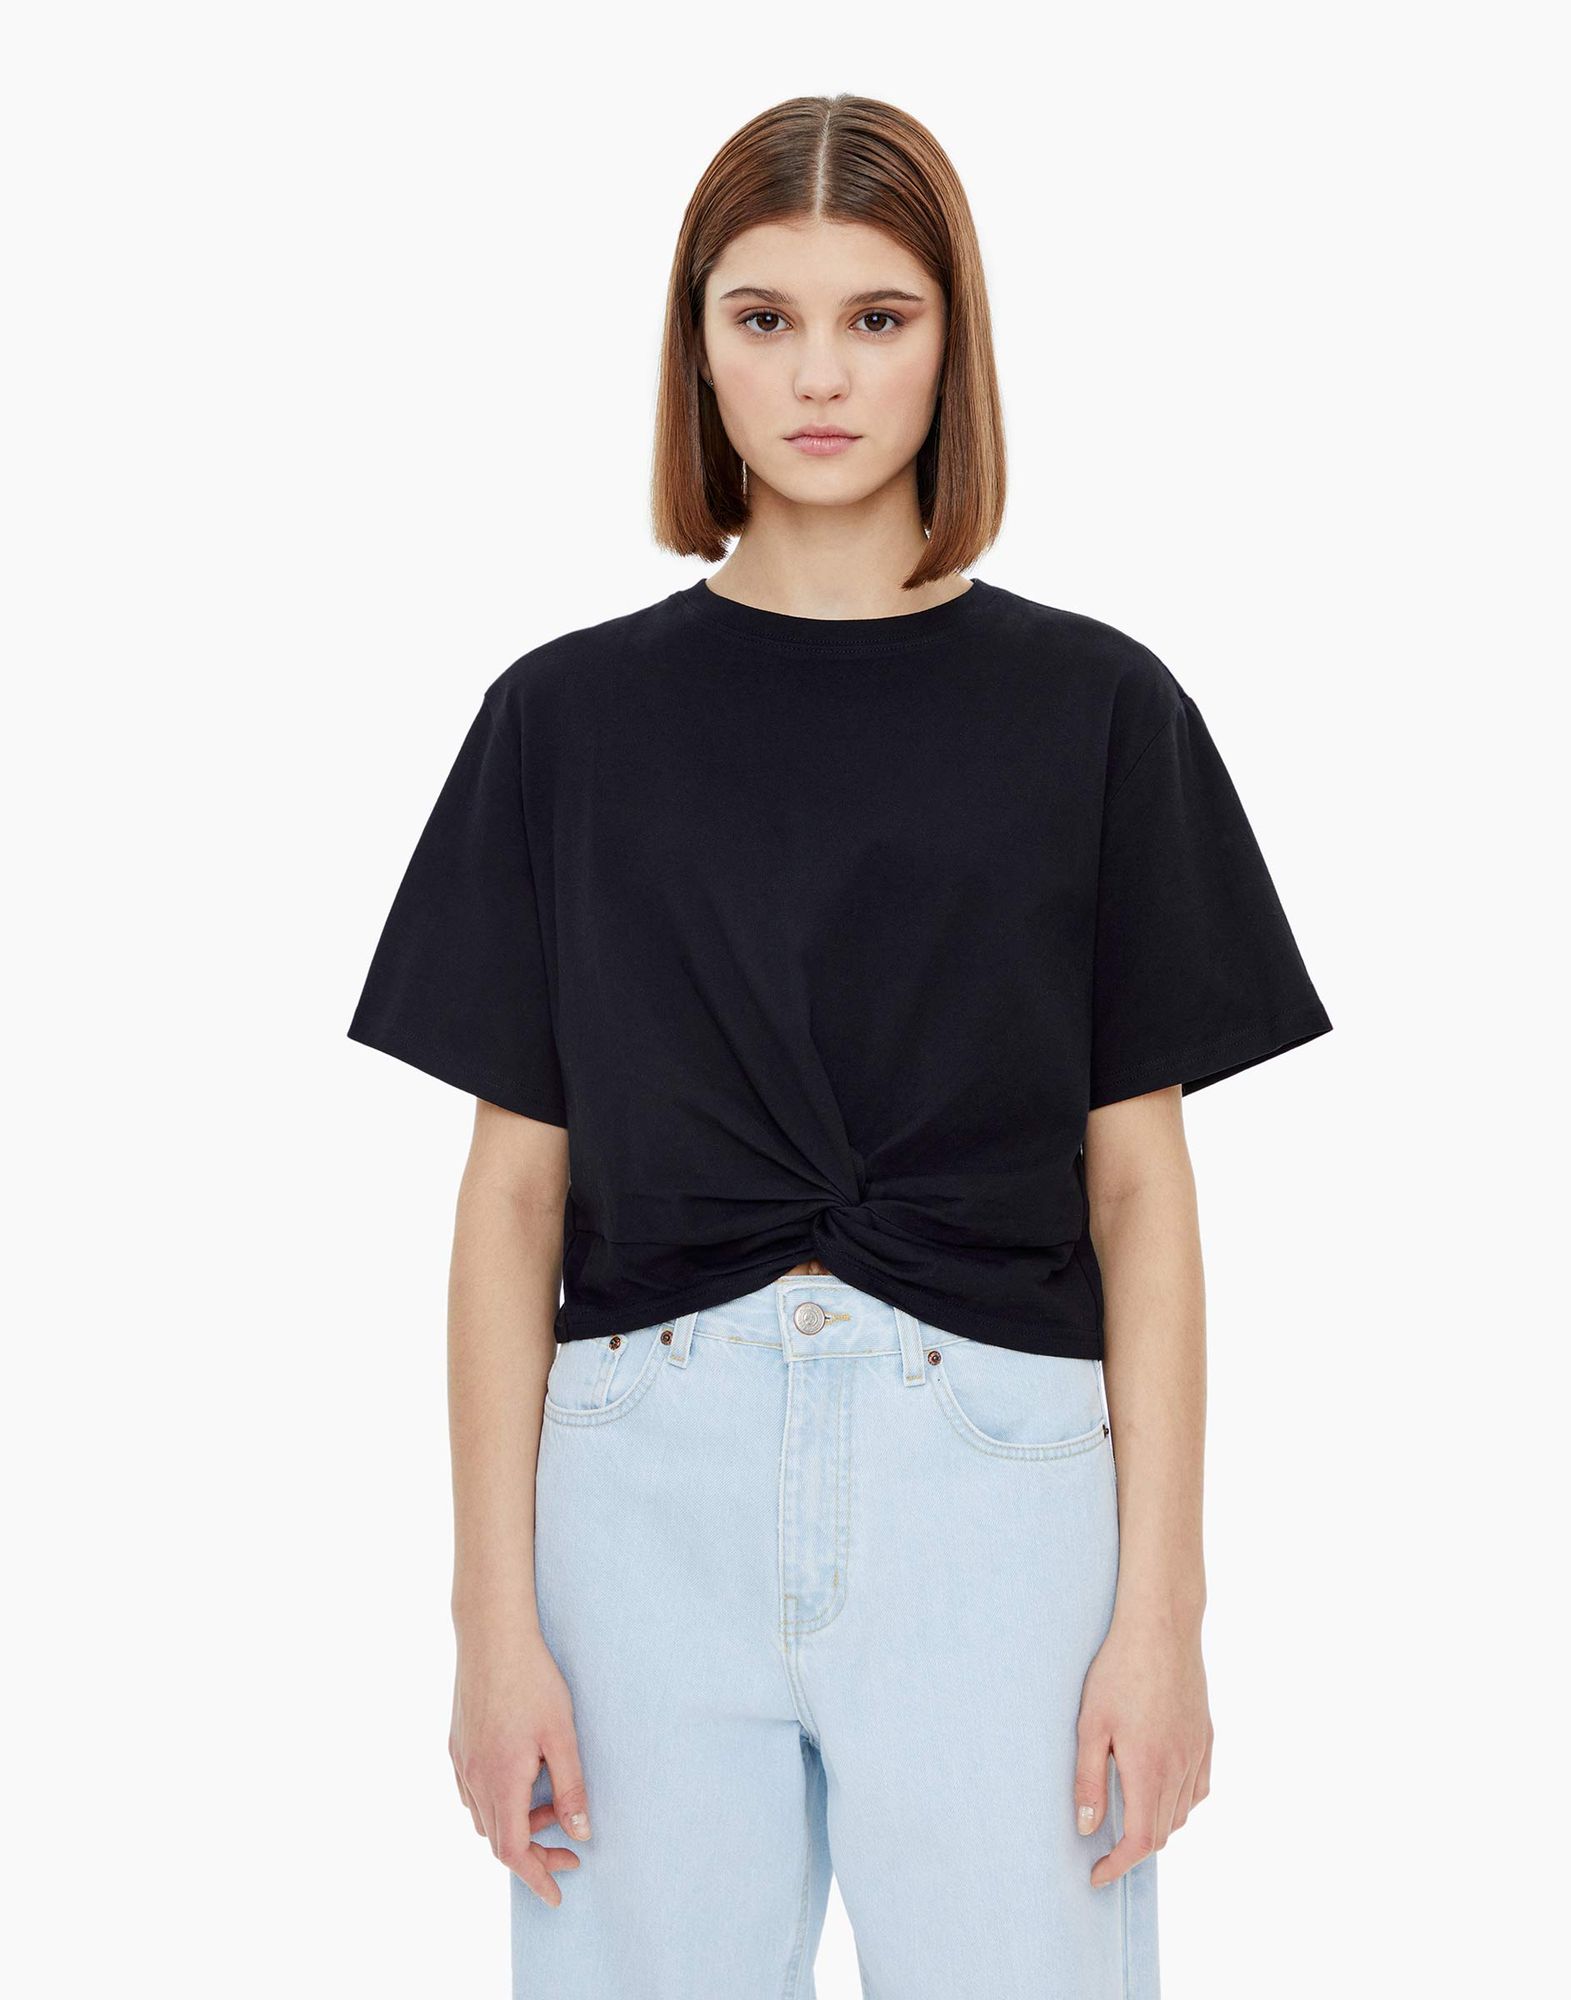 Чёрная укороченная футболка с узлом женская-0